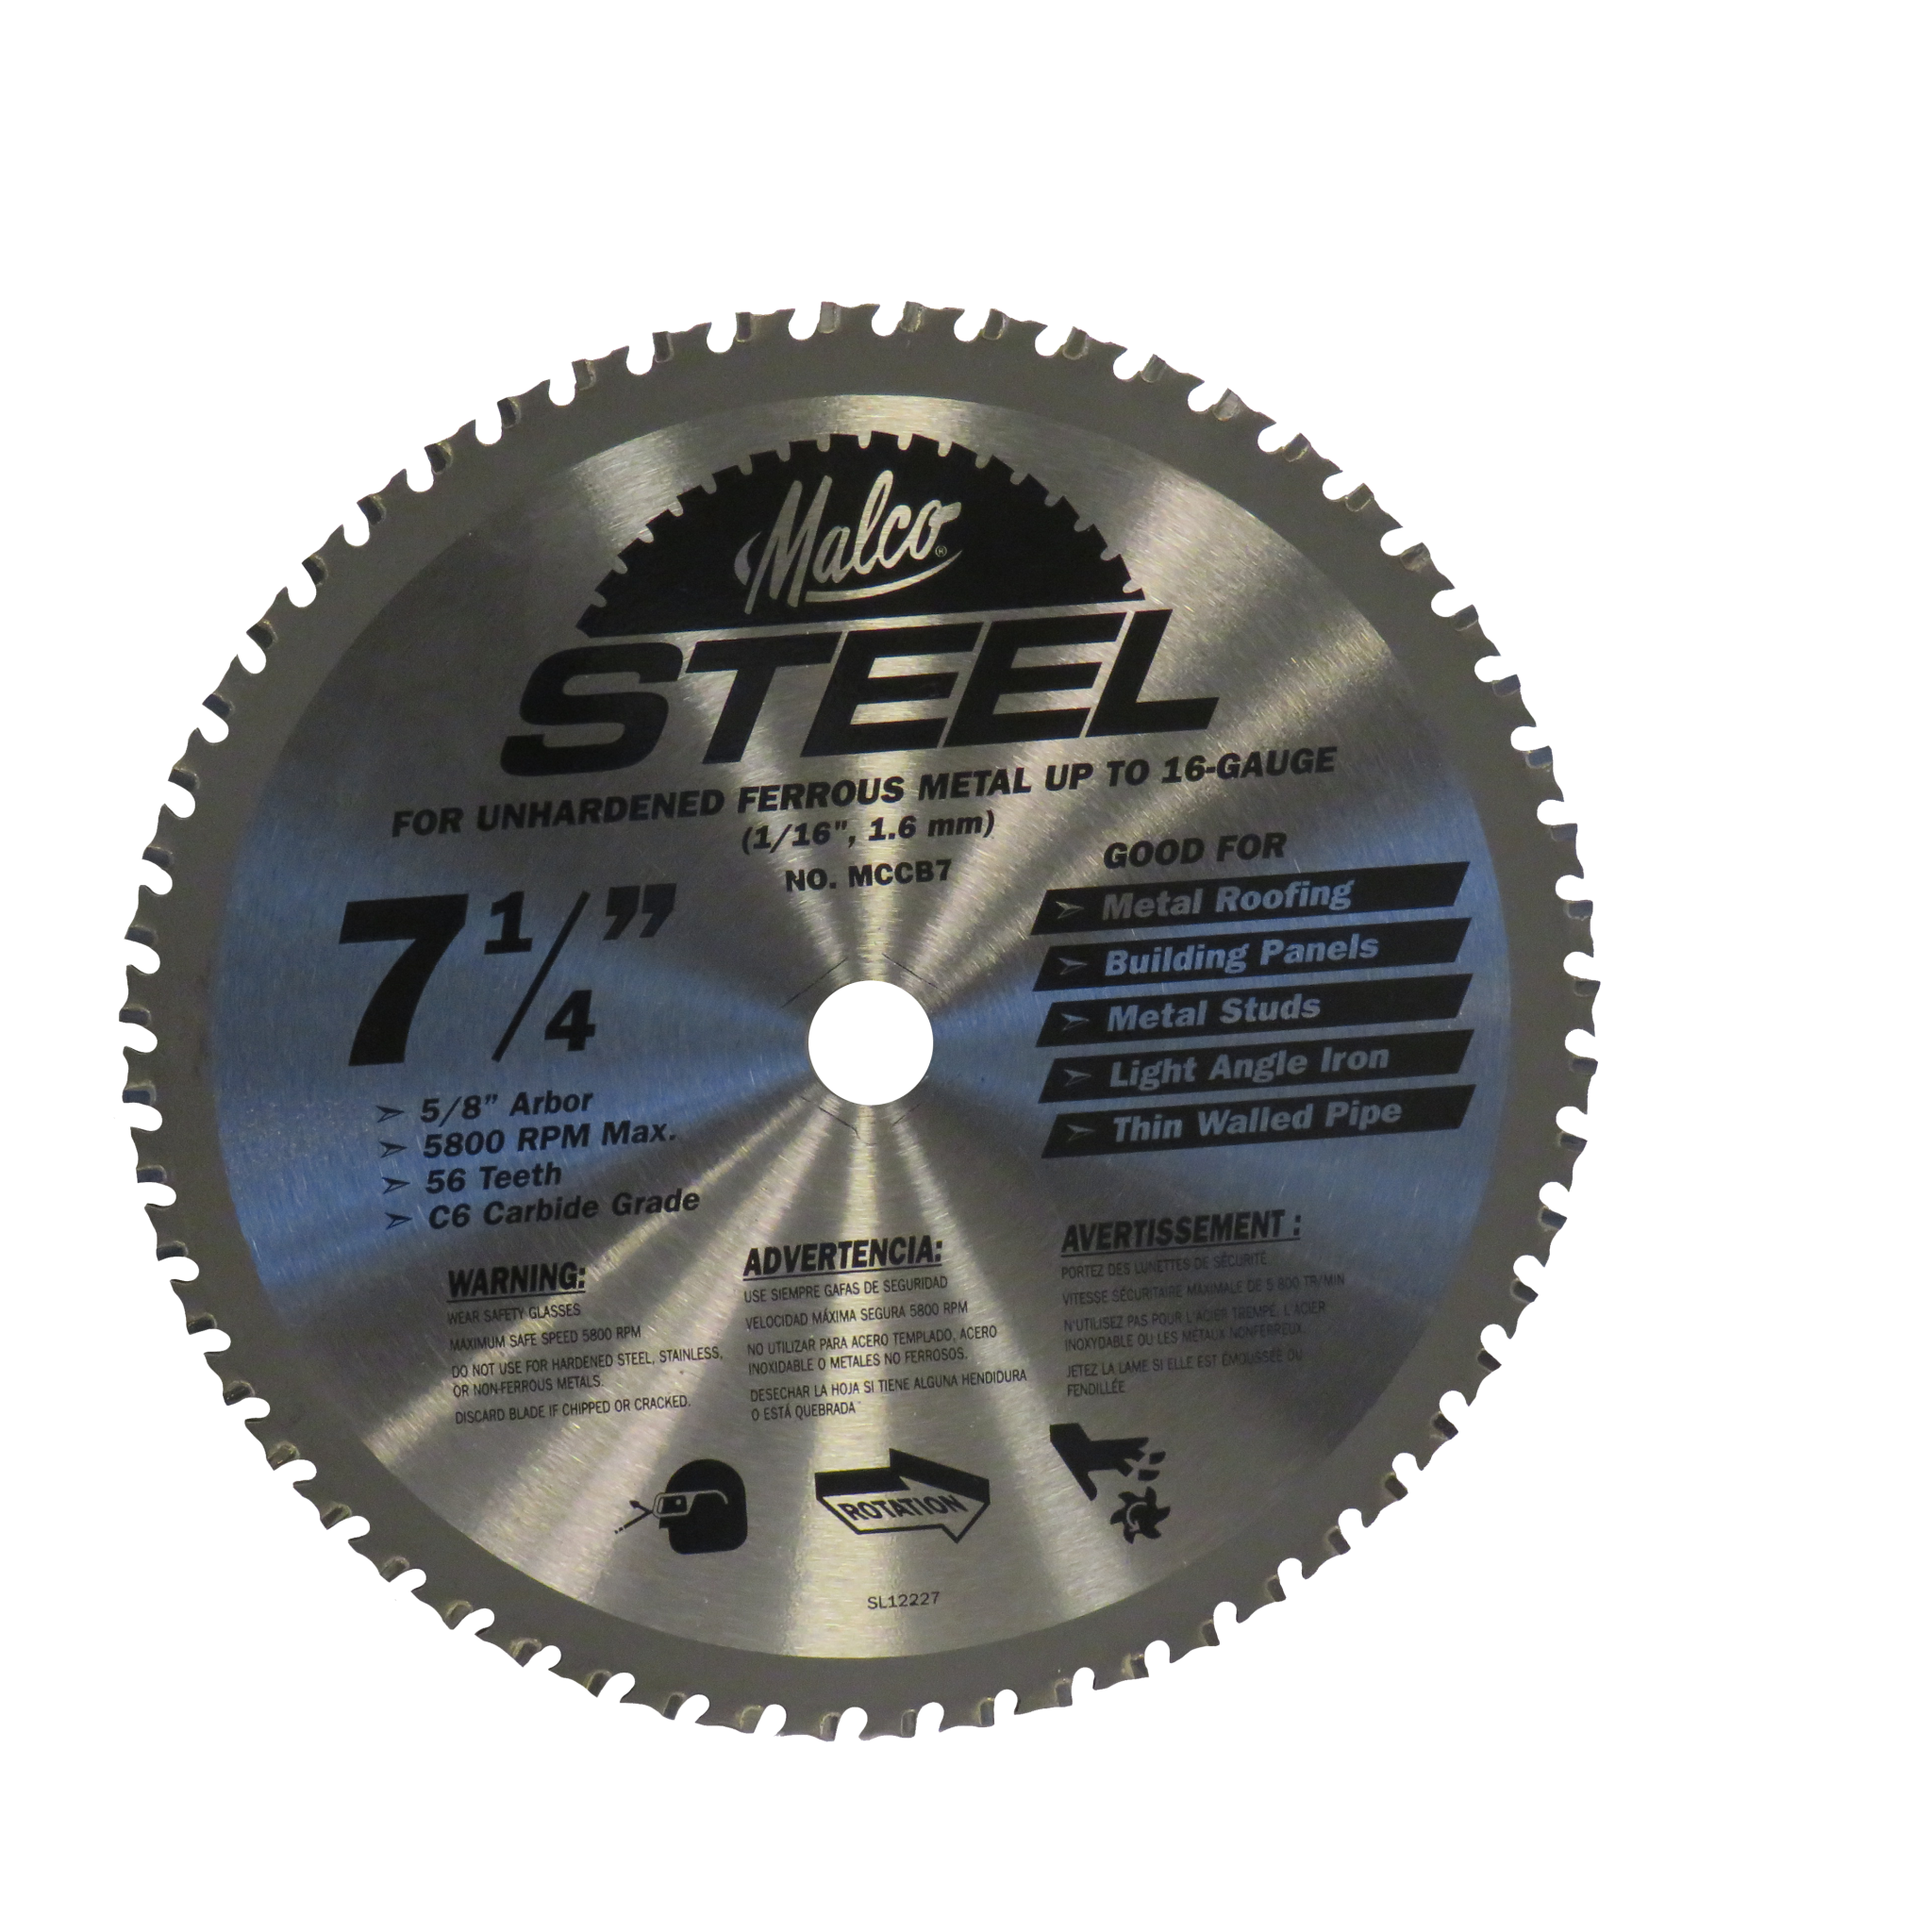 Steel Cutting Blade (MCCB7)